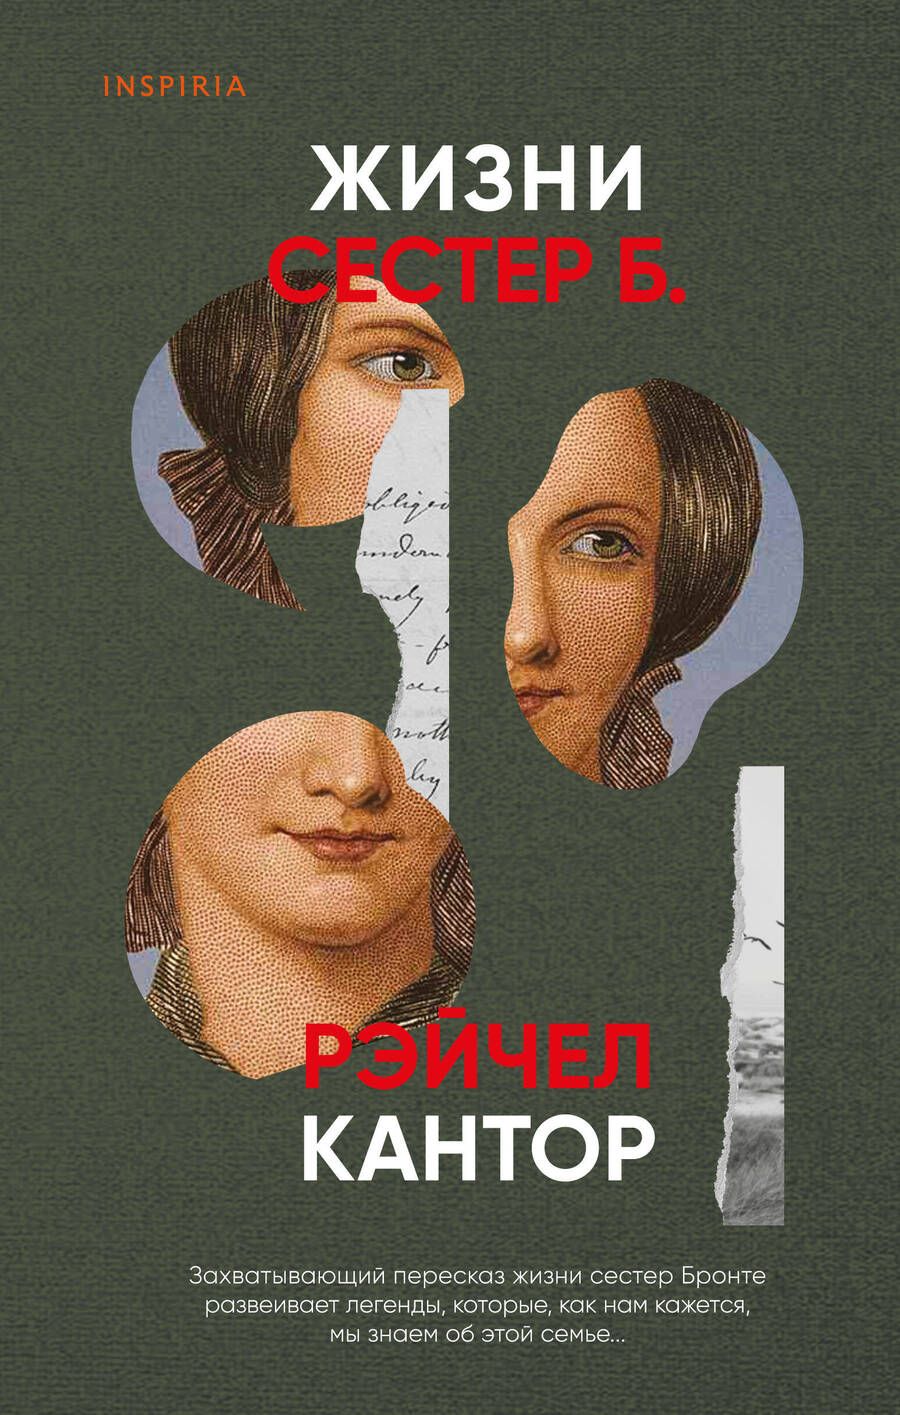 Обложка книги "Рэйчел Кантор: Жизни сестер Б."